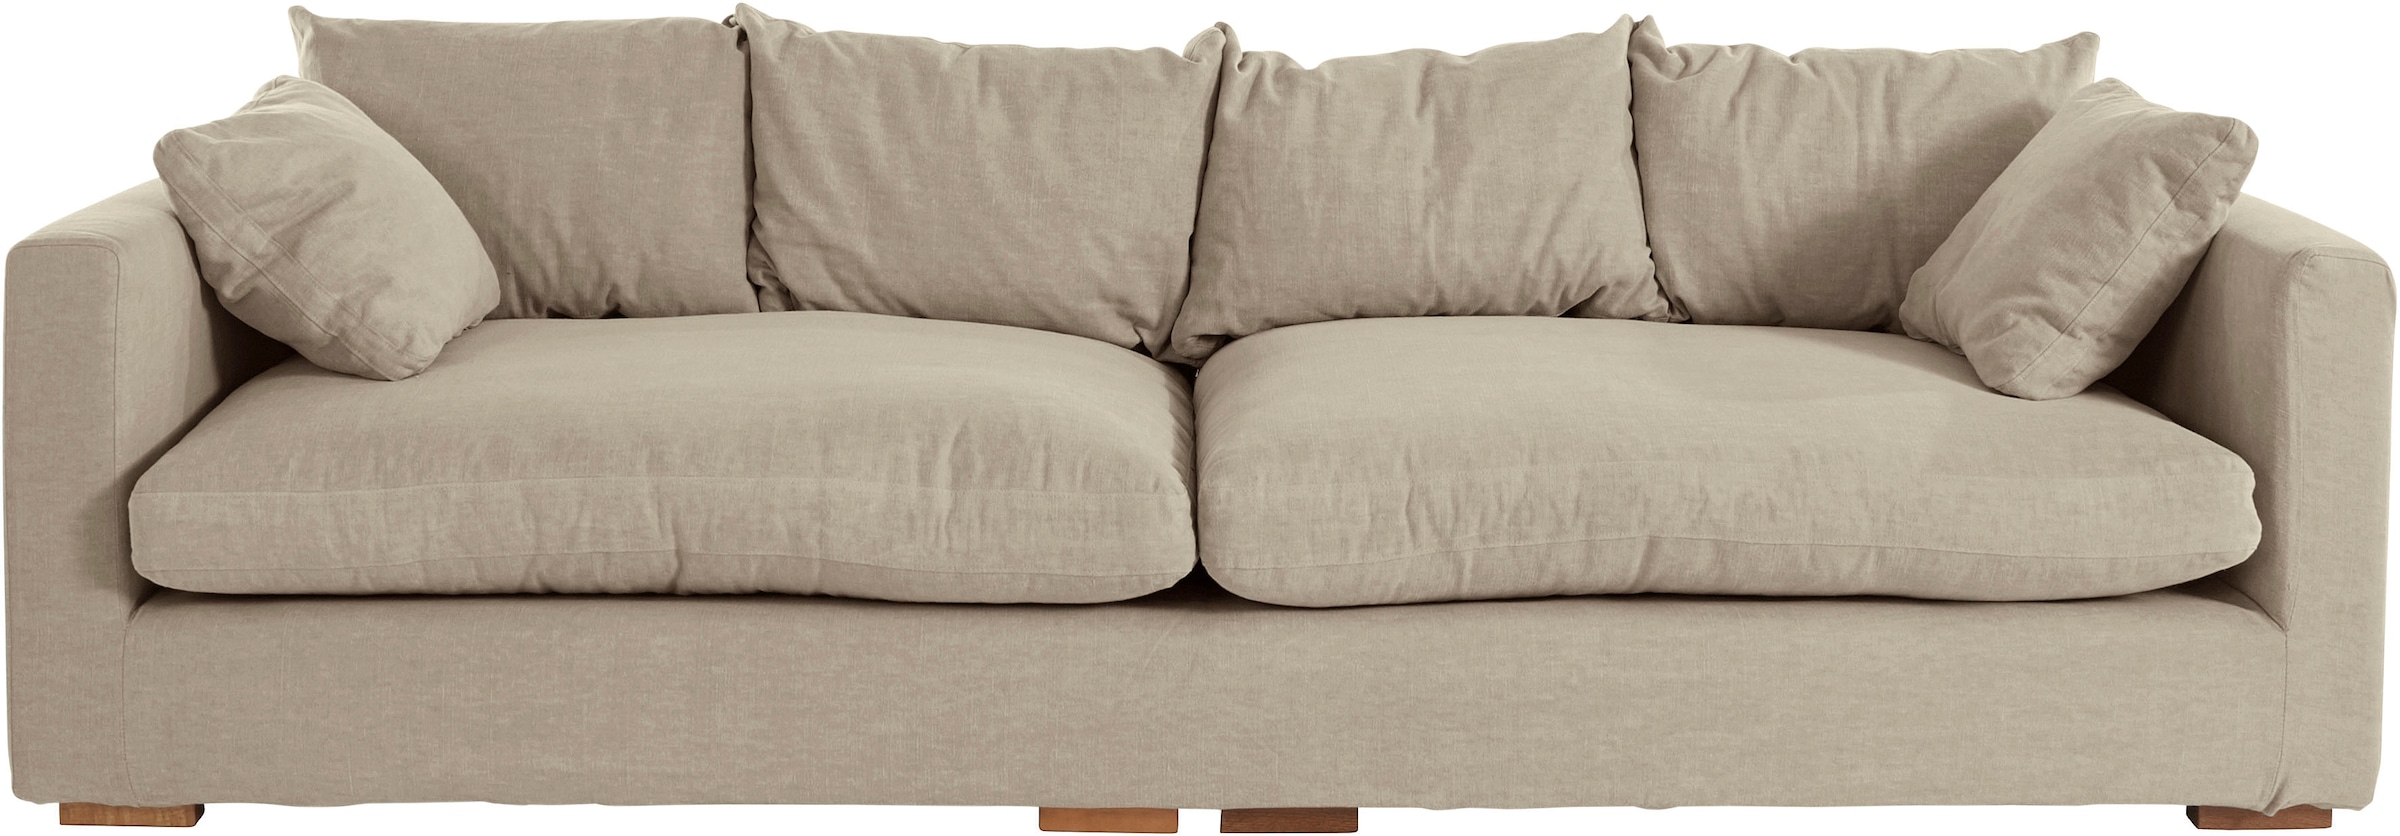 Big-Sofa »Pantin«, extra weich und kuschelig, Füllung mit Federn und Daunen